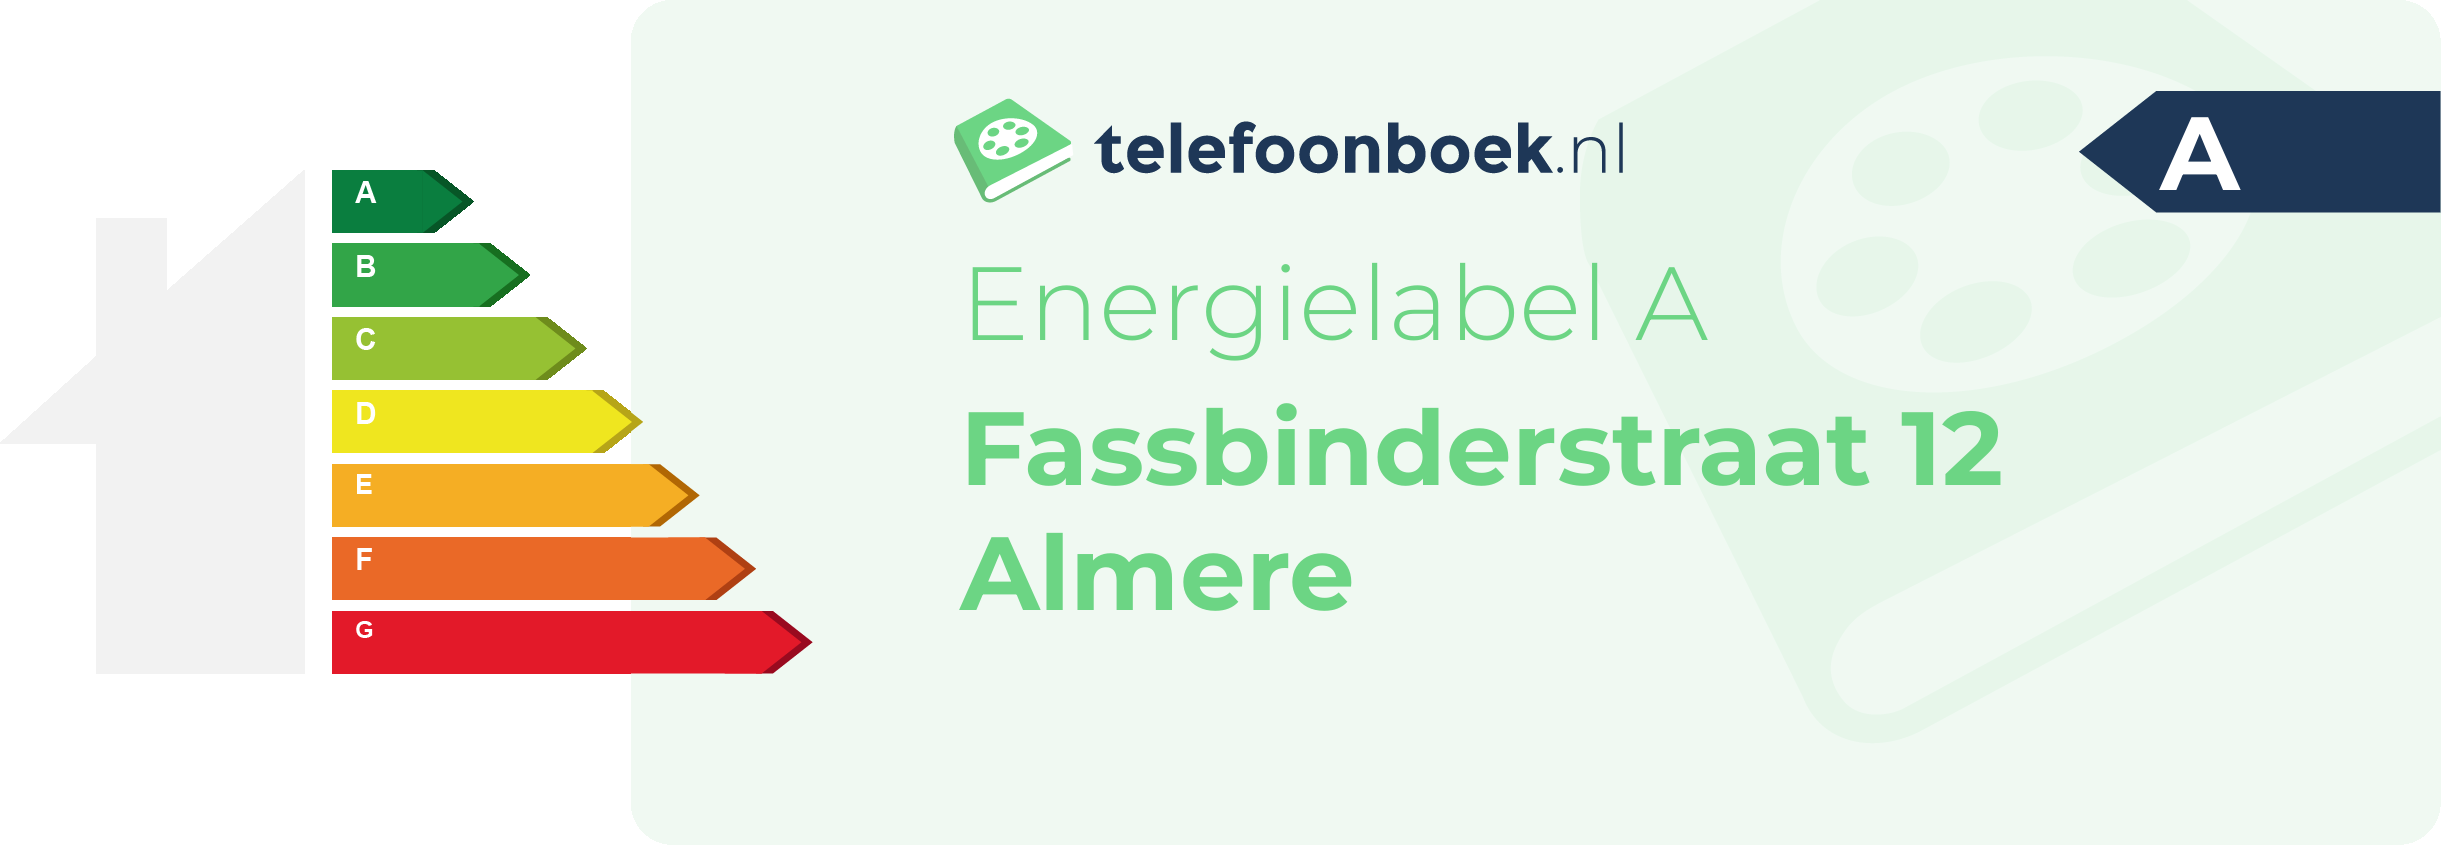 Energielabel Fassbinderstraat 12 Almere